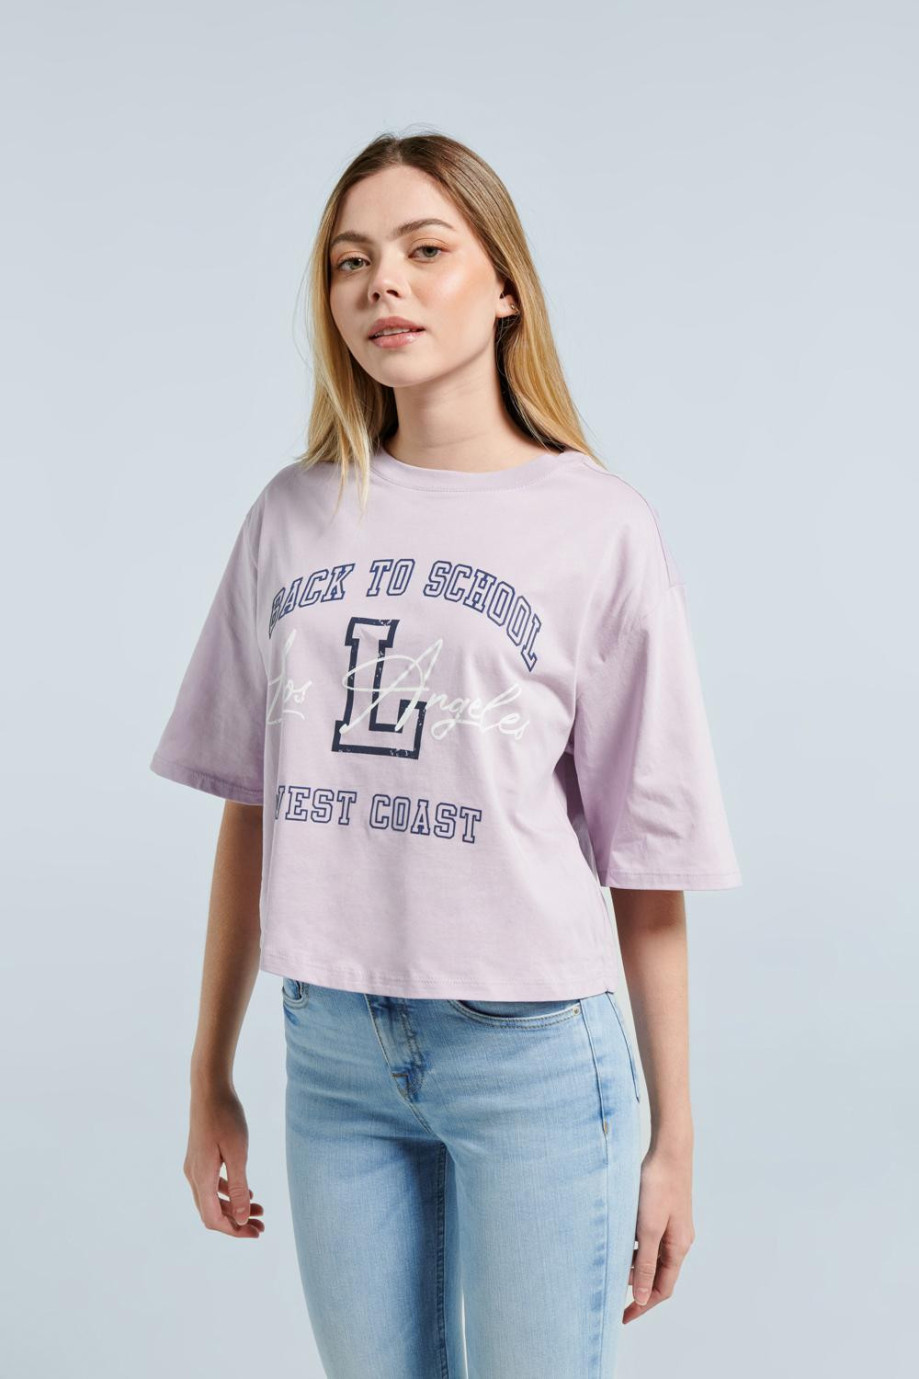 Camiseta crop top oversize para mujer estampada en frente estilo college